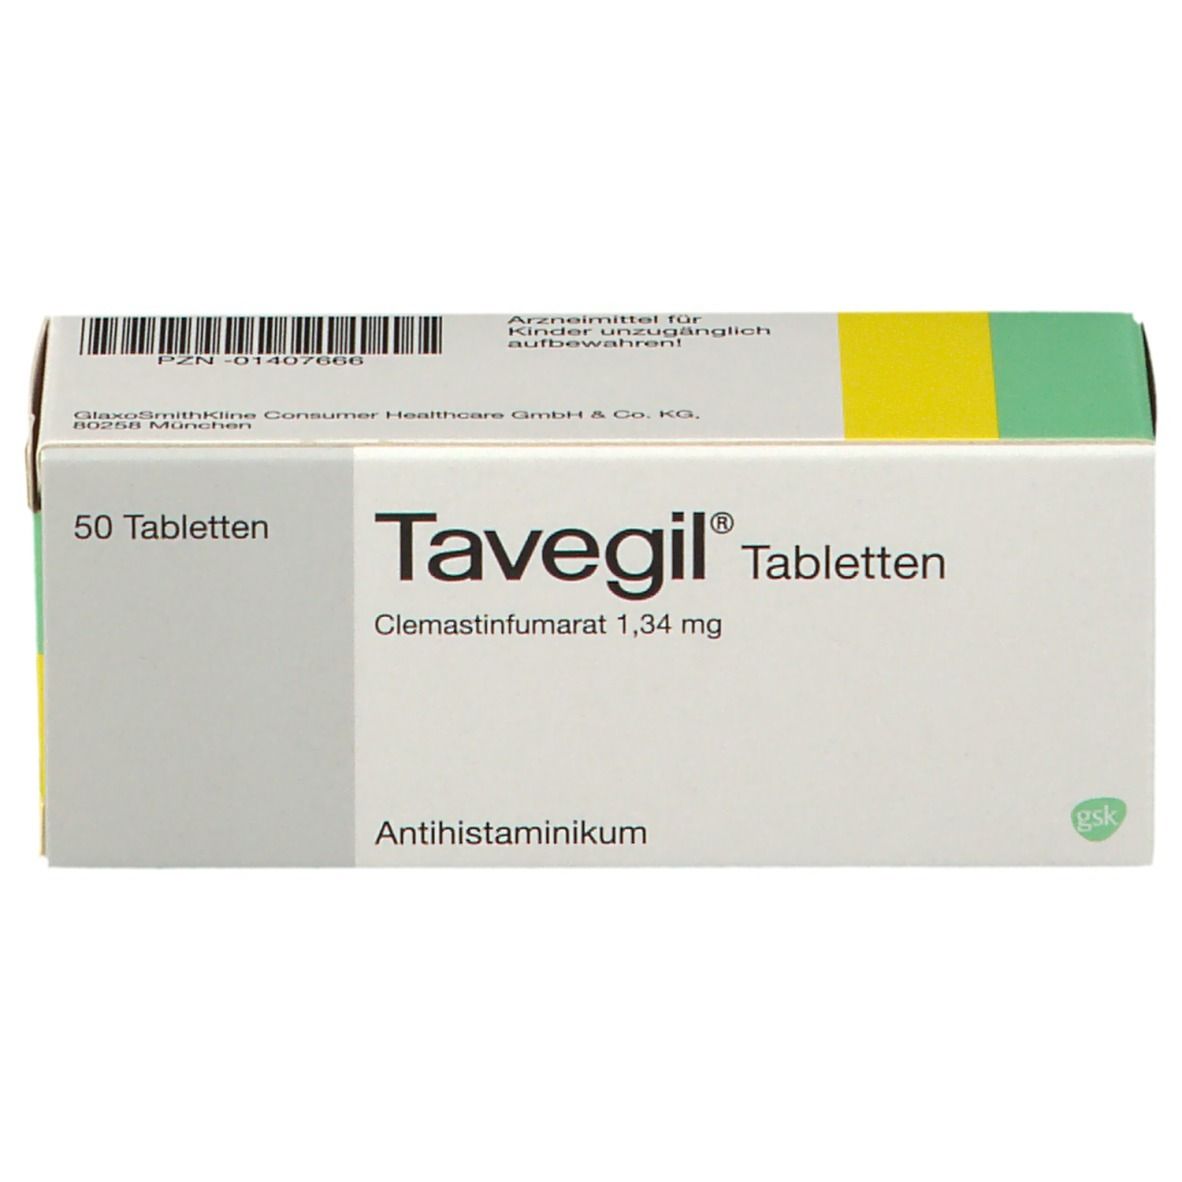 Tavegil® Tabletten